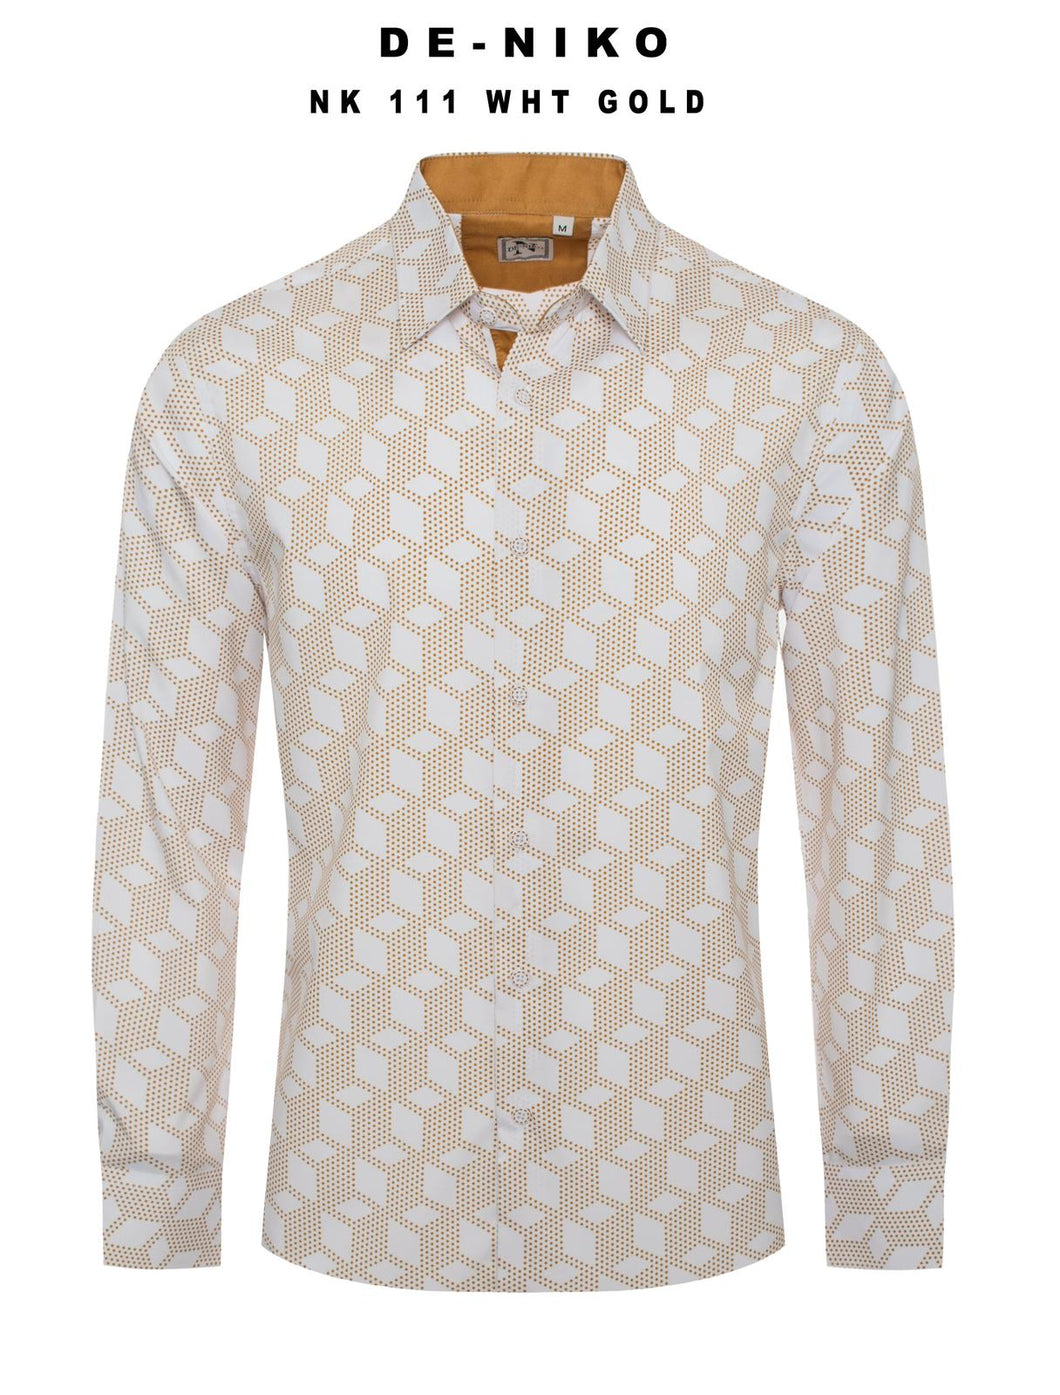 Mens De Niko White Dress Shirt with Gold Polka Dot Cubic Pattern